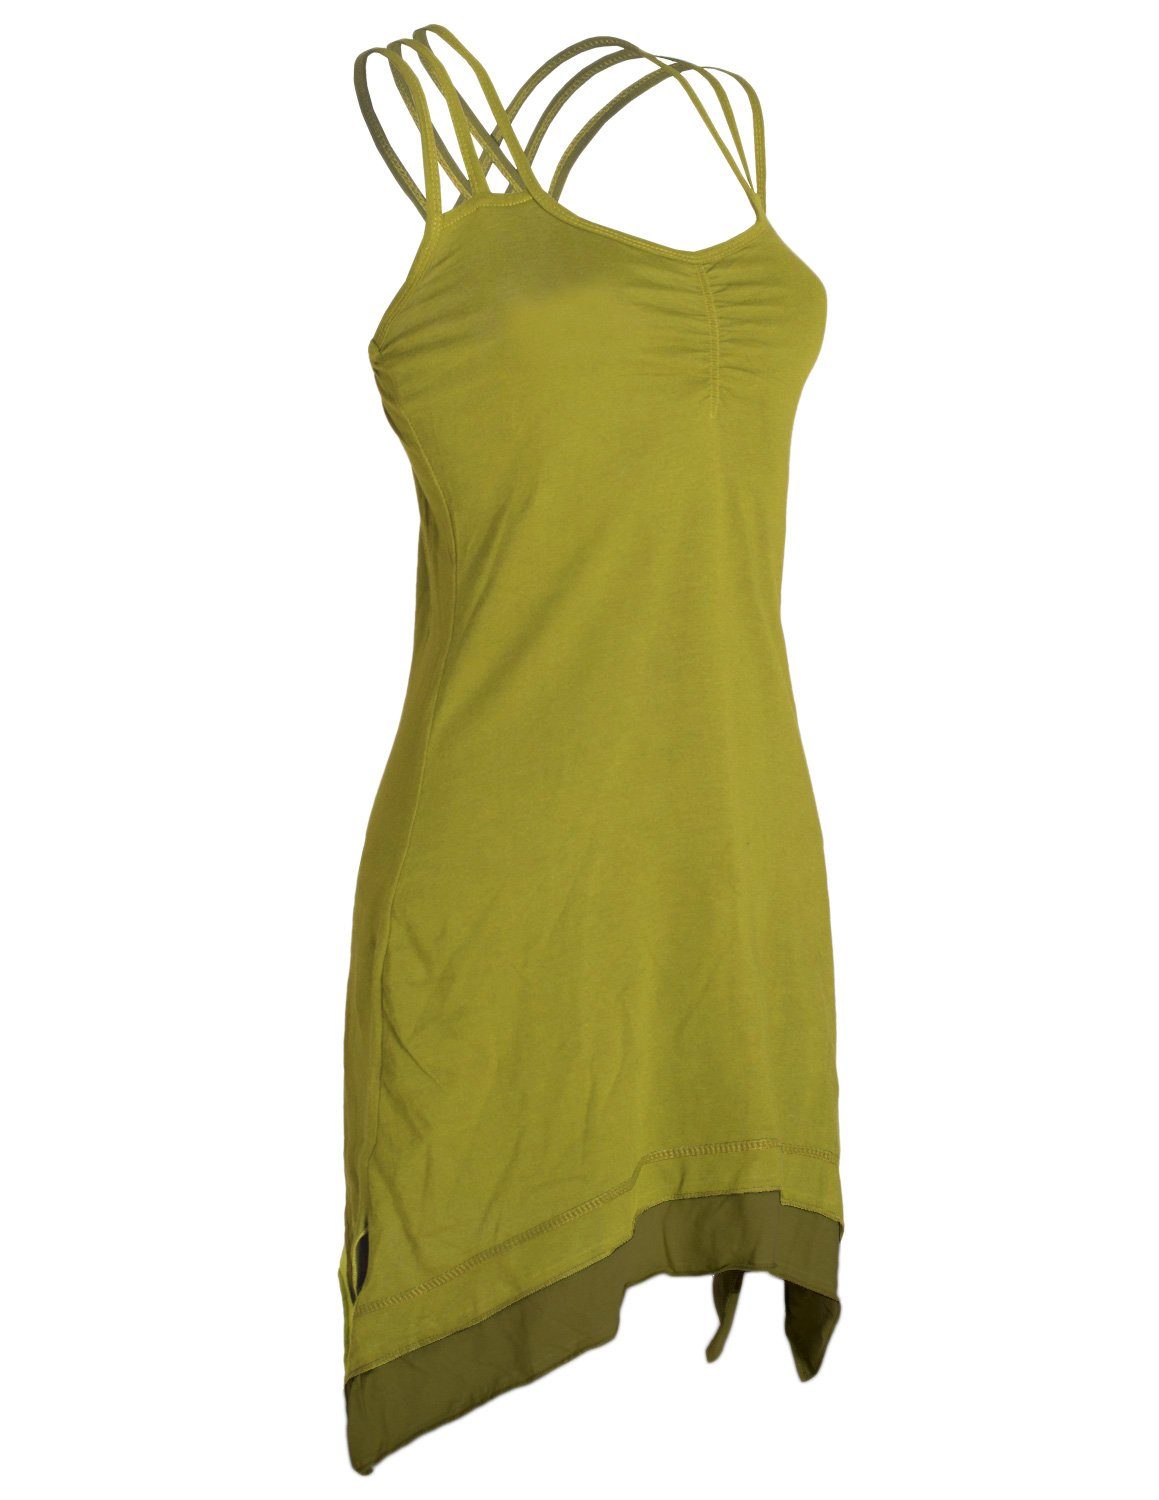 Vishes Sommerkleid Style Cotton Organic Hippie, Trägerkleid Zipfeln Boho hellgrün Lagenlook mit Elfen